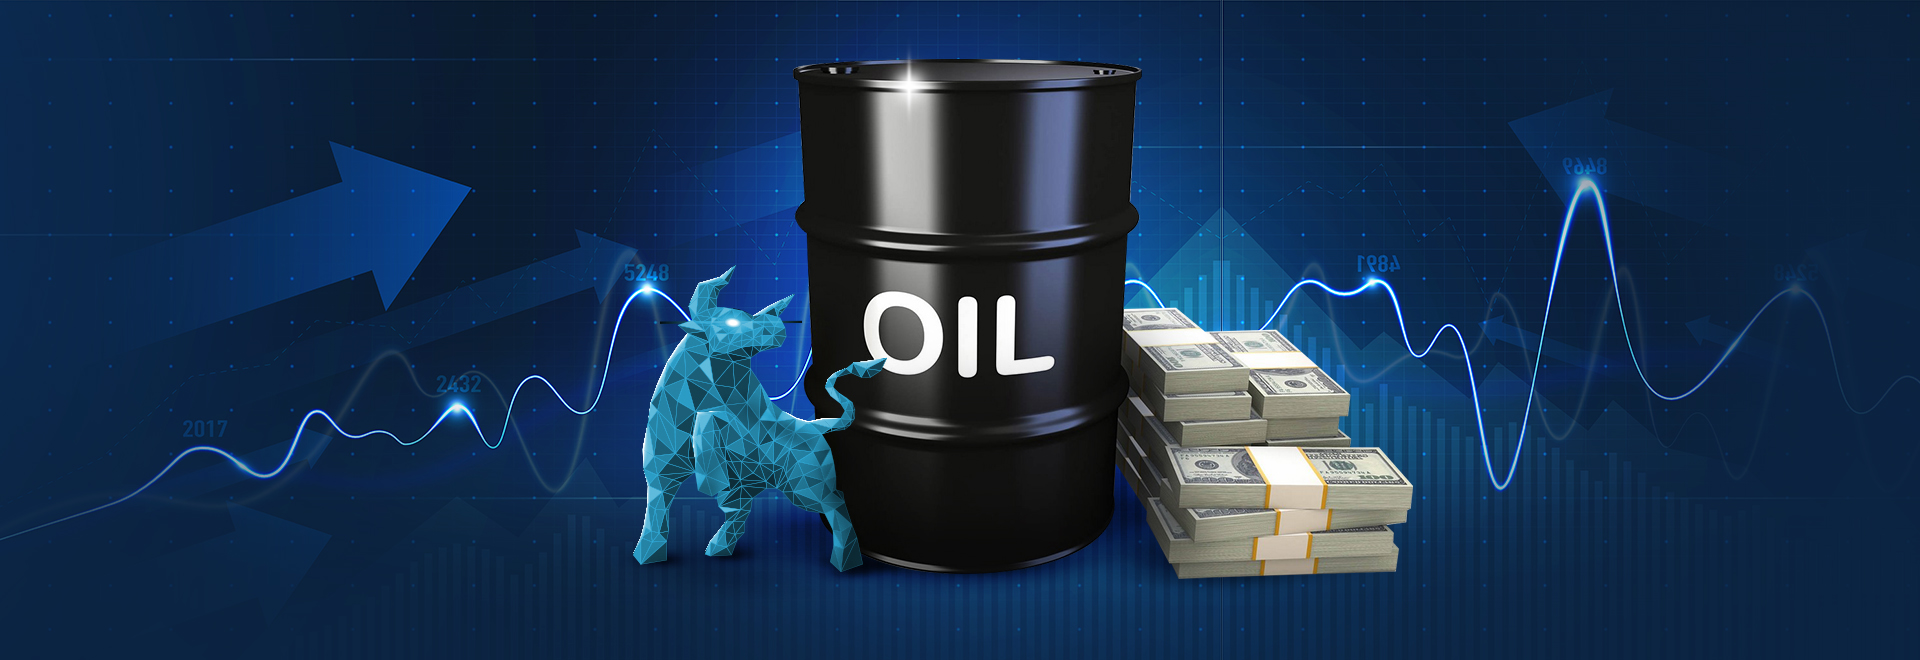 کاهش قیمت نفت به دلیل نگرانی سرمایه گذاران در زمینه اقتصاد 